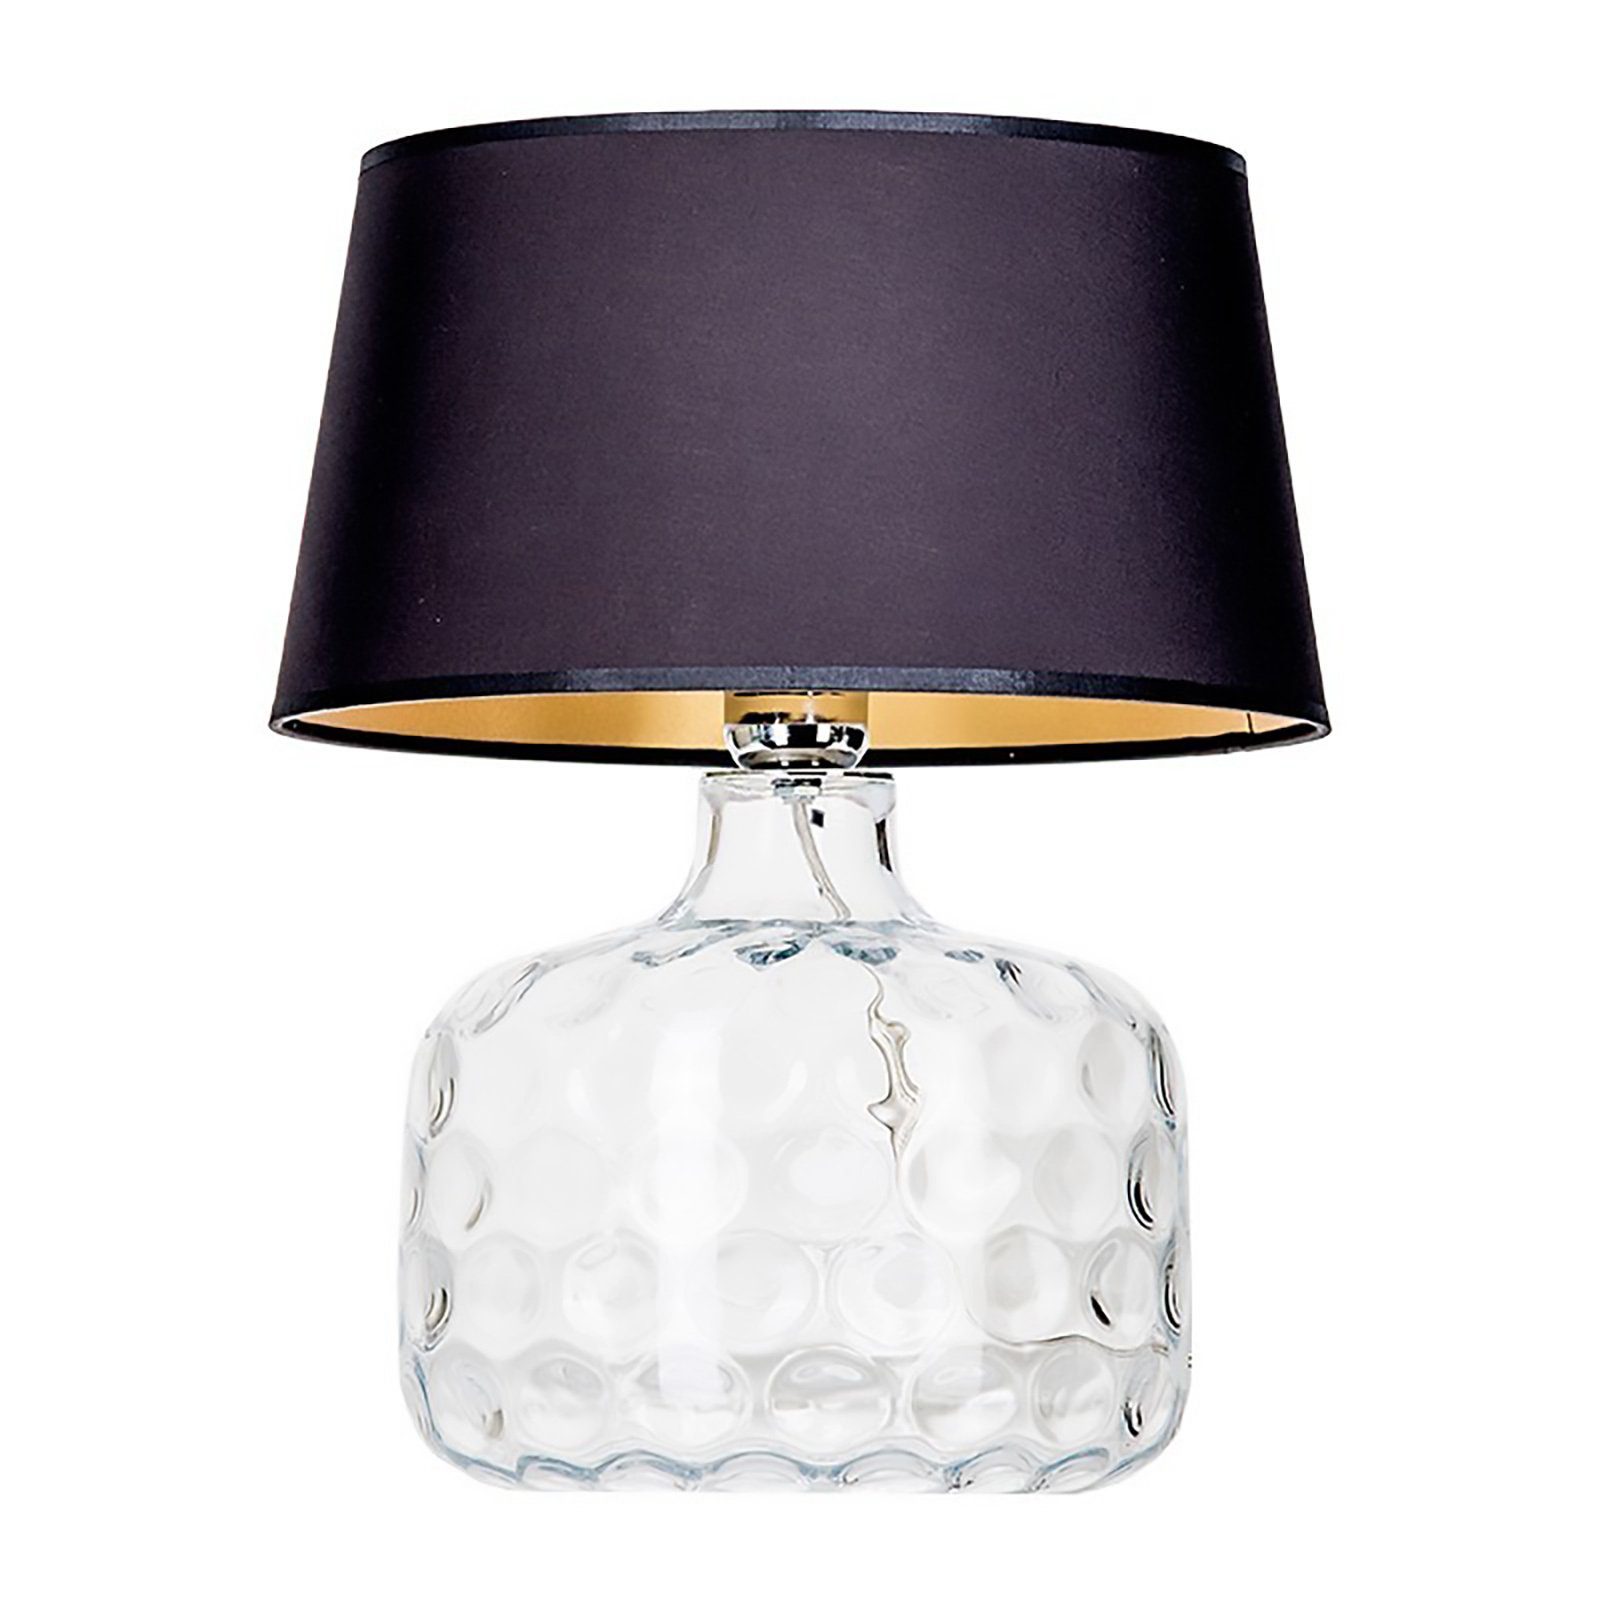 Signature Home Collection Tischleuchte Tischlampe aus Glas durchsichtig mit Schirm weiß, ohne Leuchtmittel, Glaslampe mundgeblasen schwarz